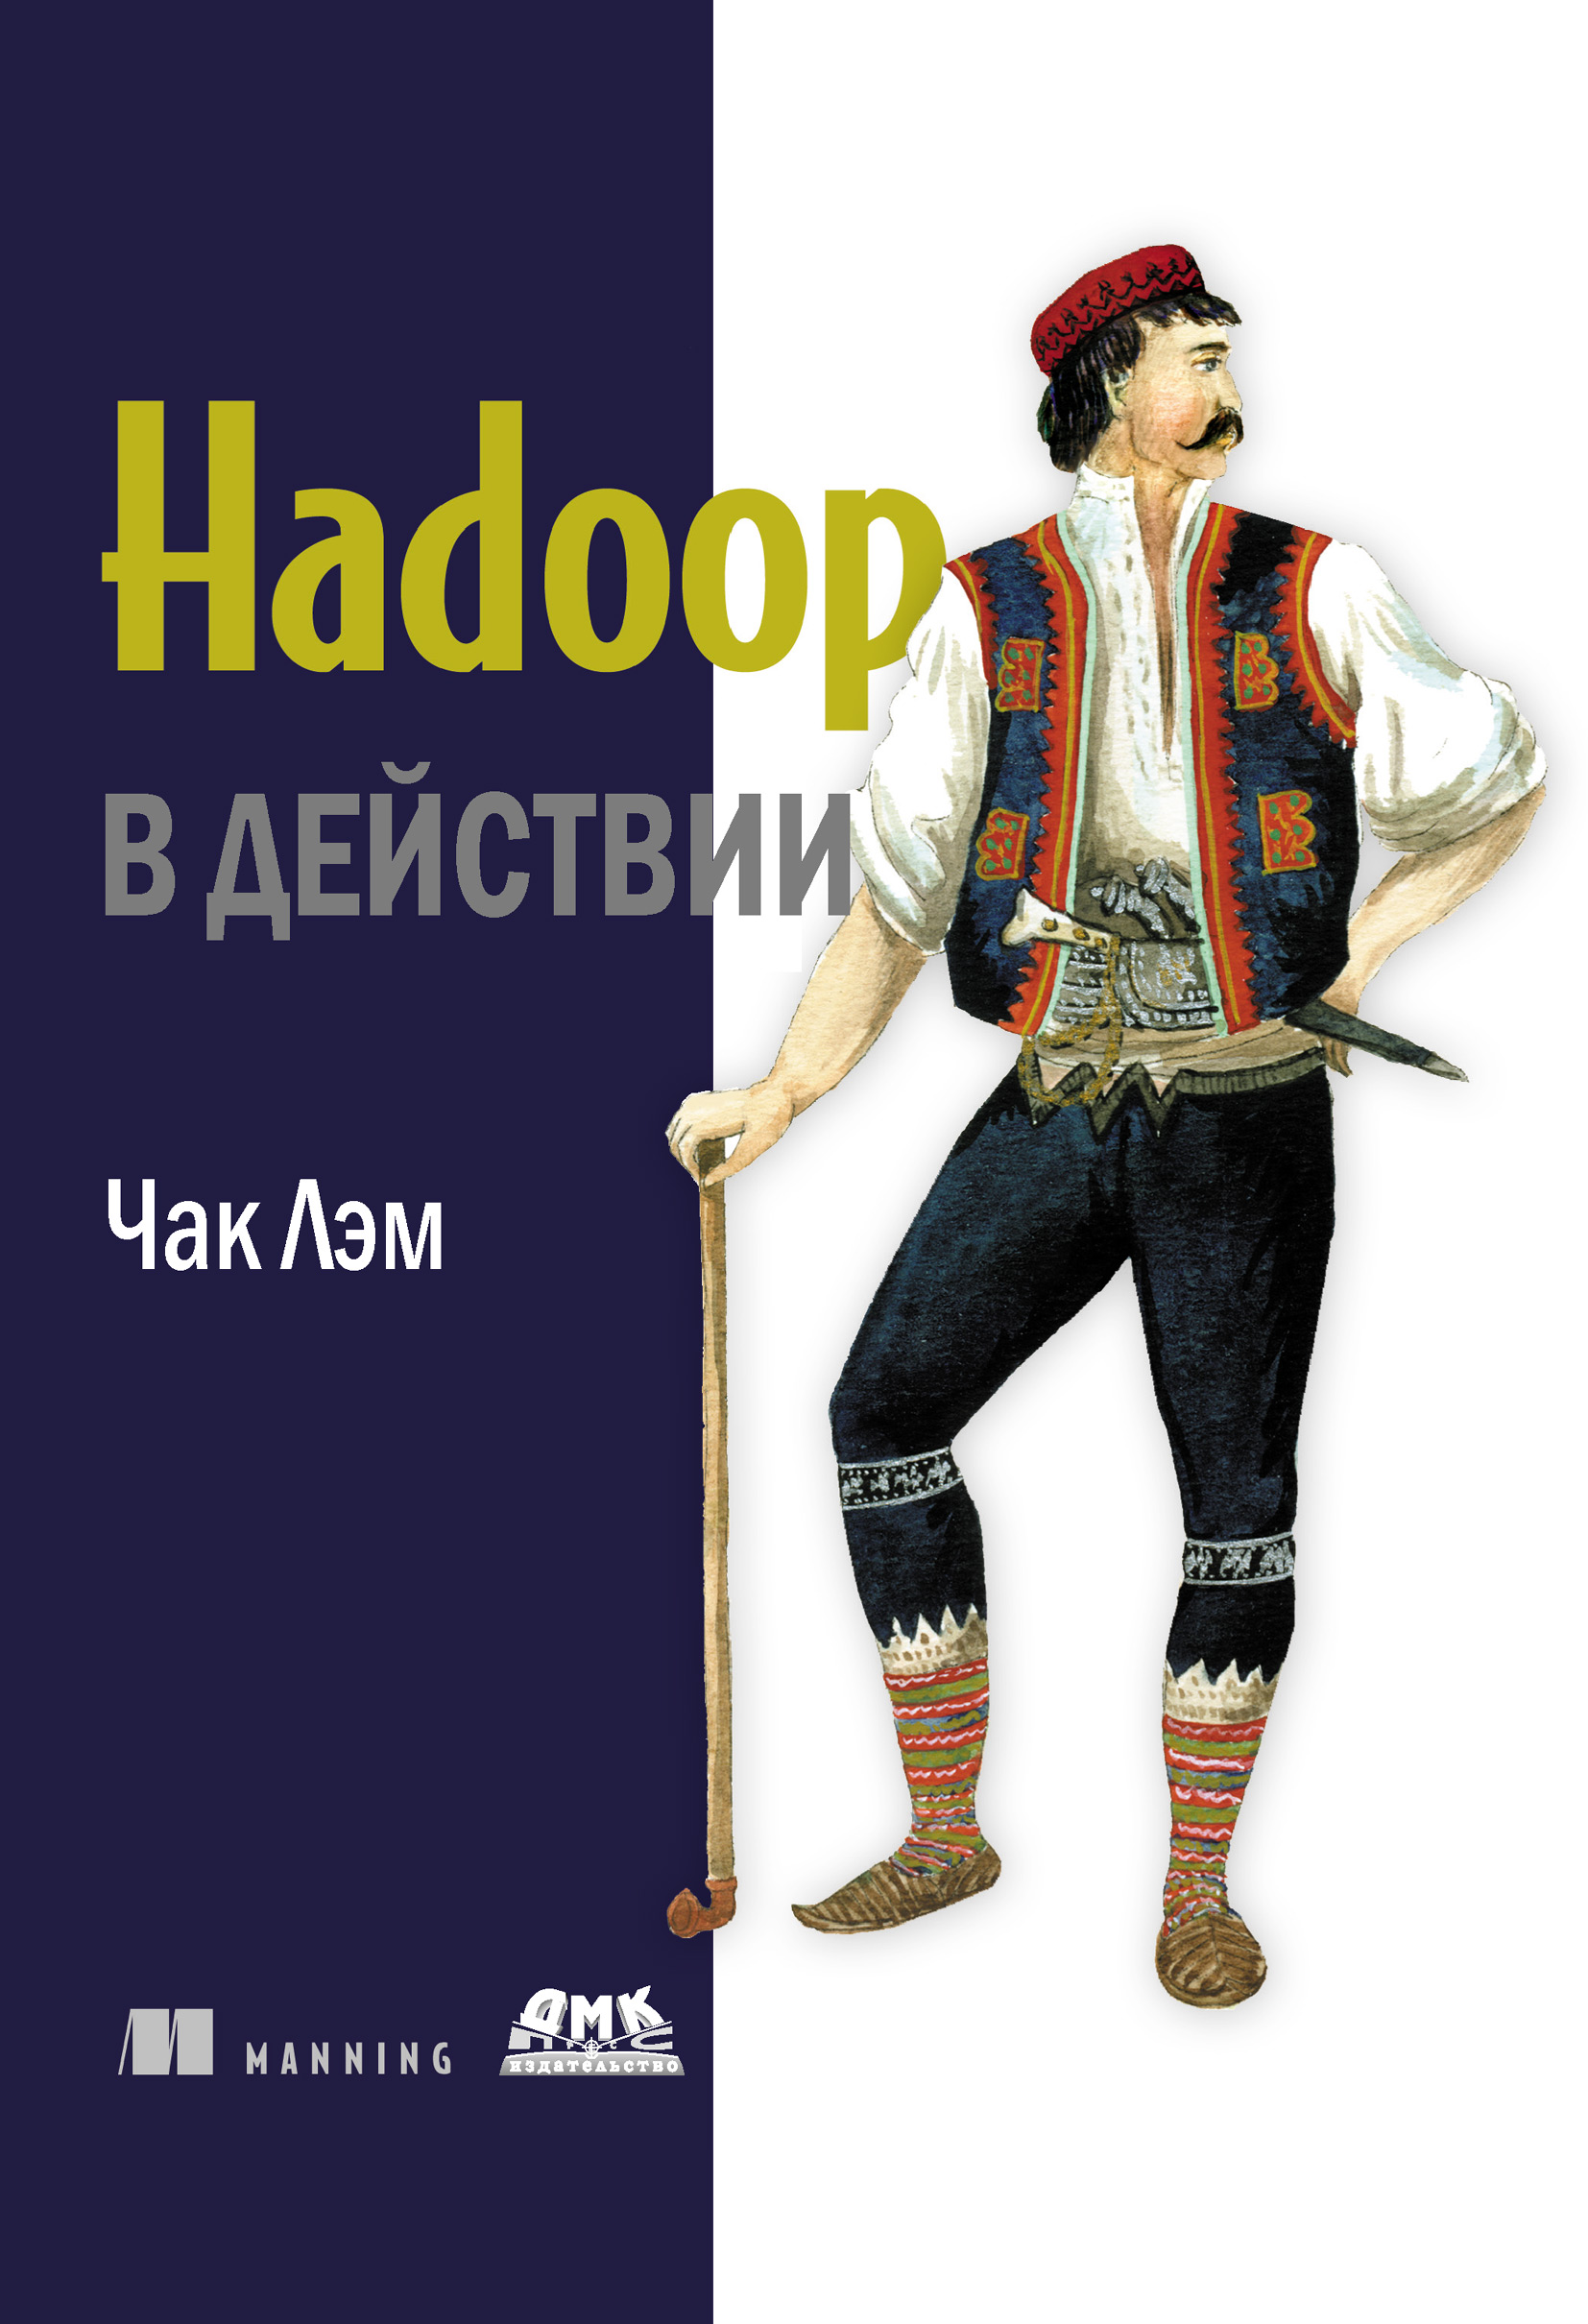 Книга  Hadoop в действии созданная Чак Лэм может относится к жанру базы данных, зарубежная компьютерная литература, интернет, программирование. Стоимость электронной книги Hadoop в действии с идентификатором 6655625 составляет 519.00 руб.